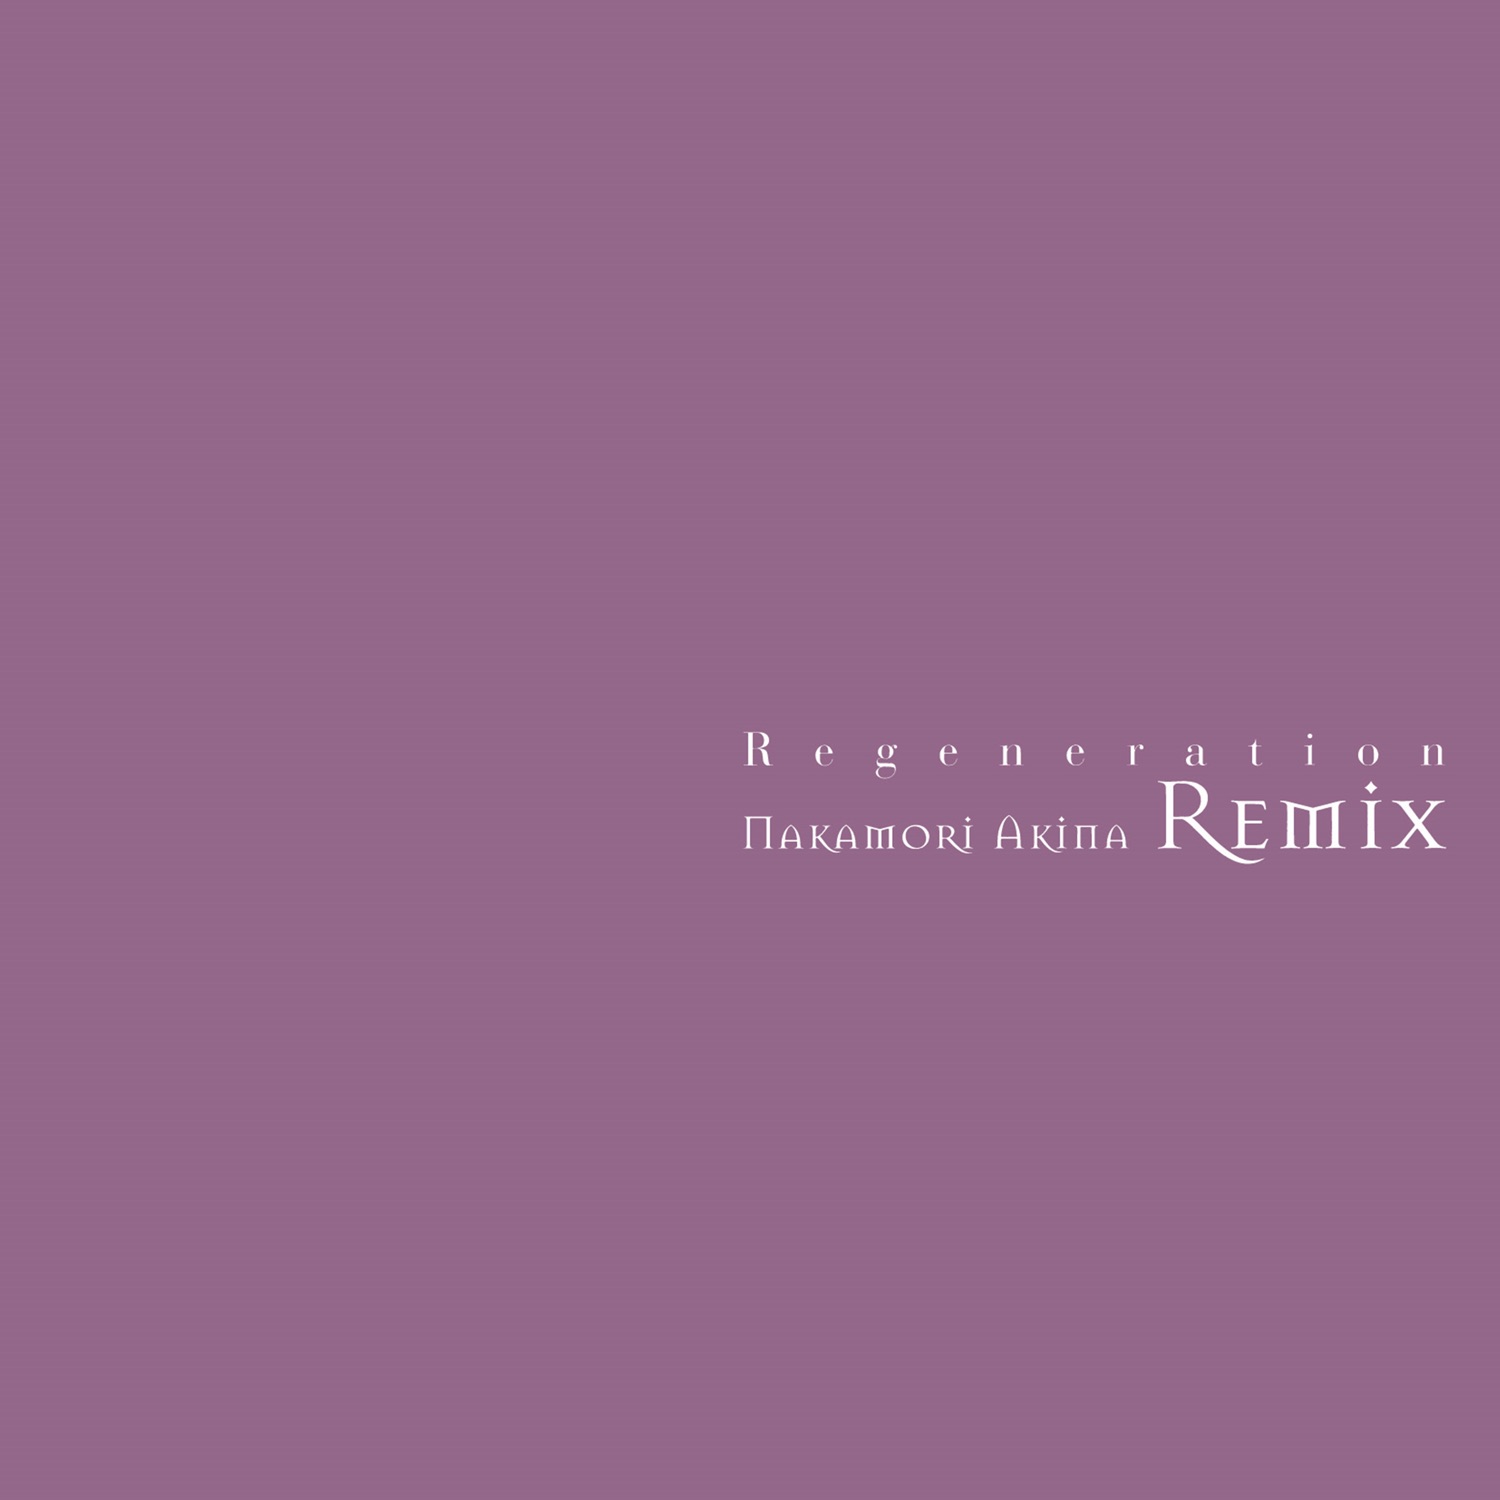 Regeneration -中森明菜 re-mix-